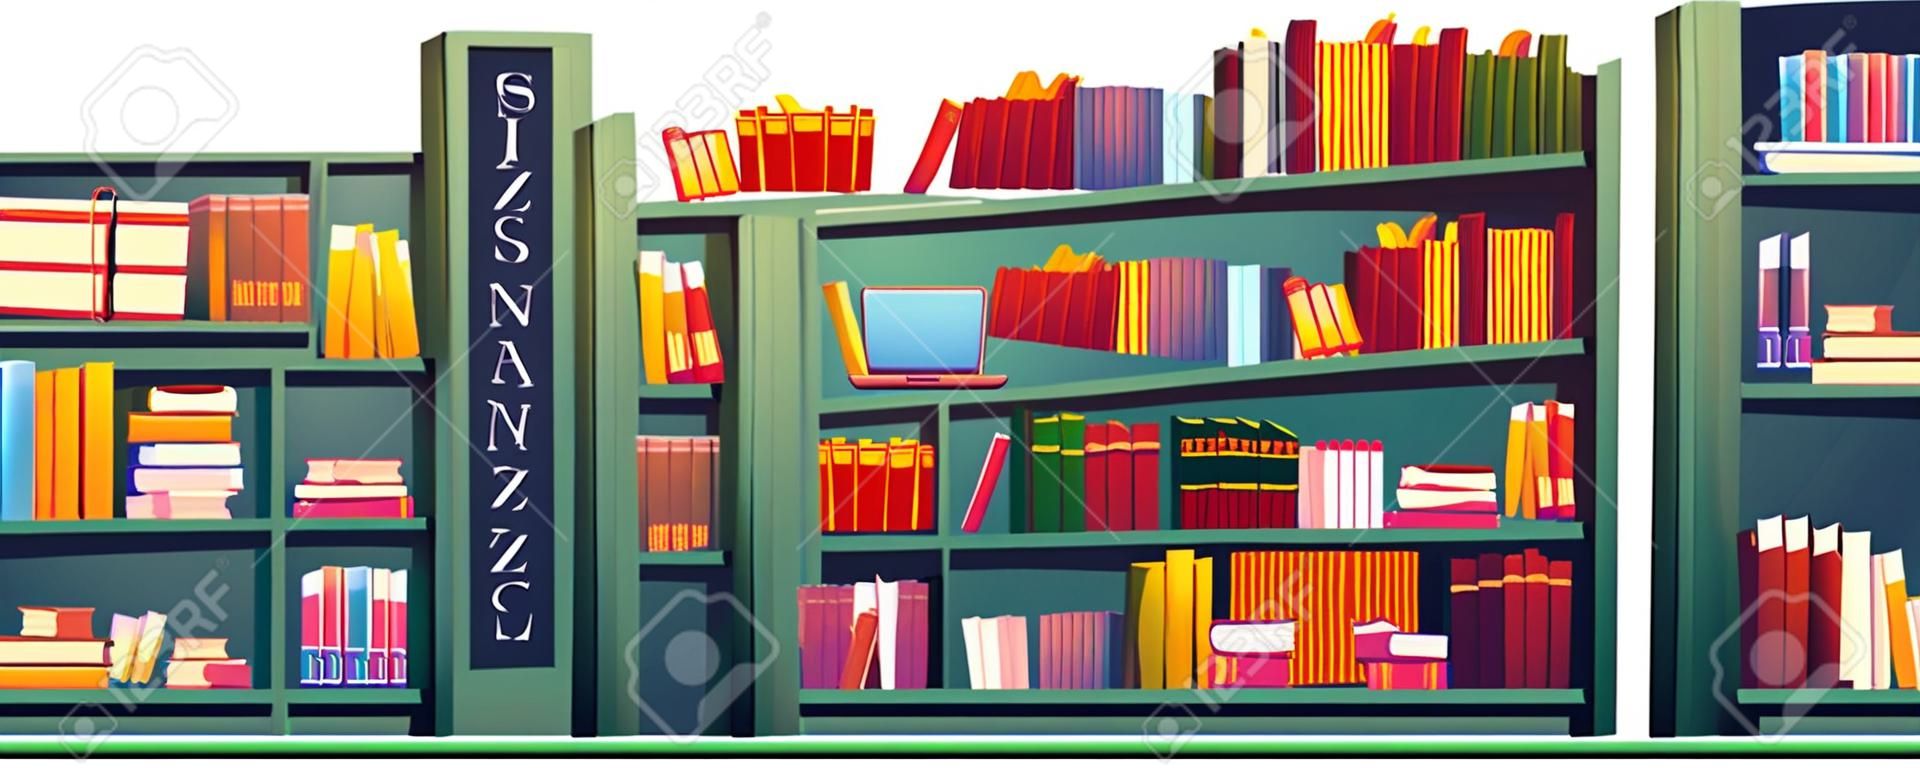 Biblioteka z książkami na półkach i laptopem na stole. Ilustracja kreskówka wektor szkoły, uniwersytetu lub biblioteki publicznej lub sklepu z regałem, biurkiem do nauki i lampą na białym tle